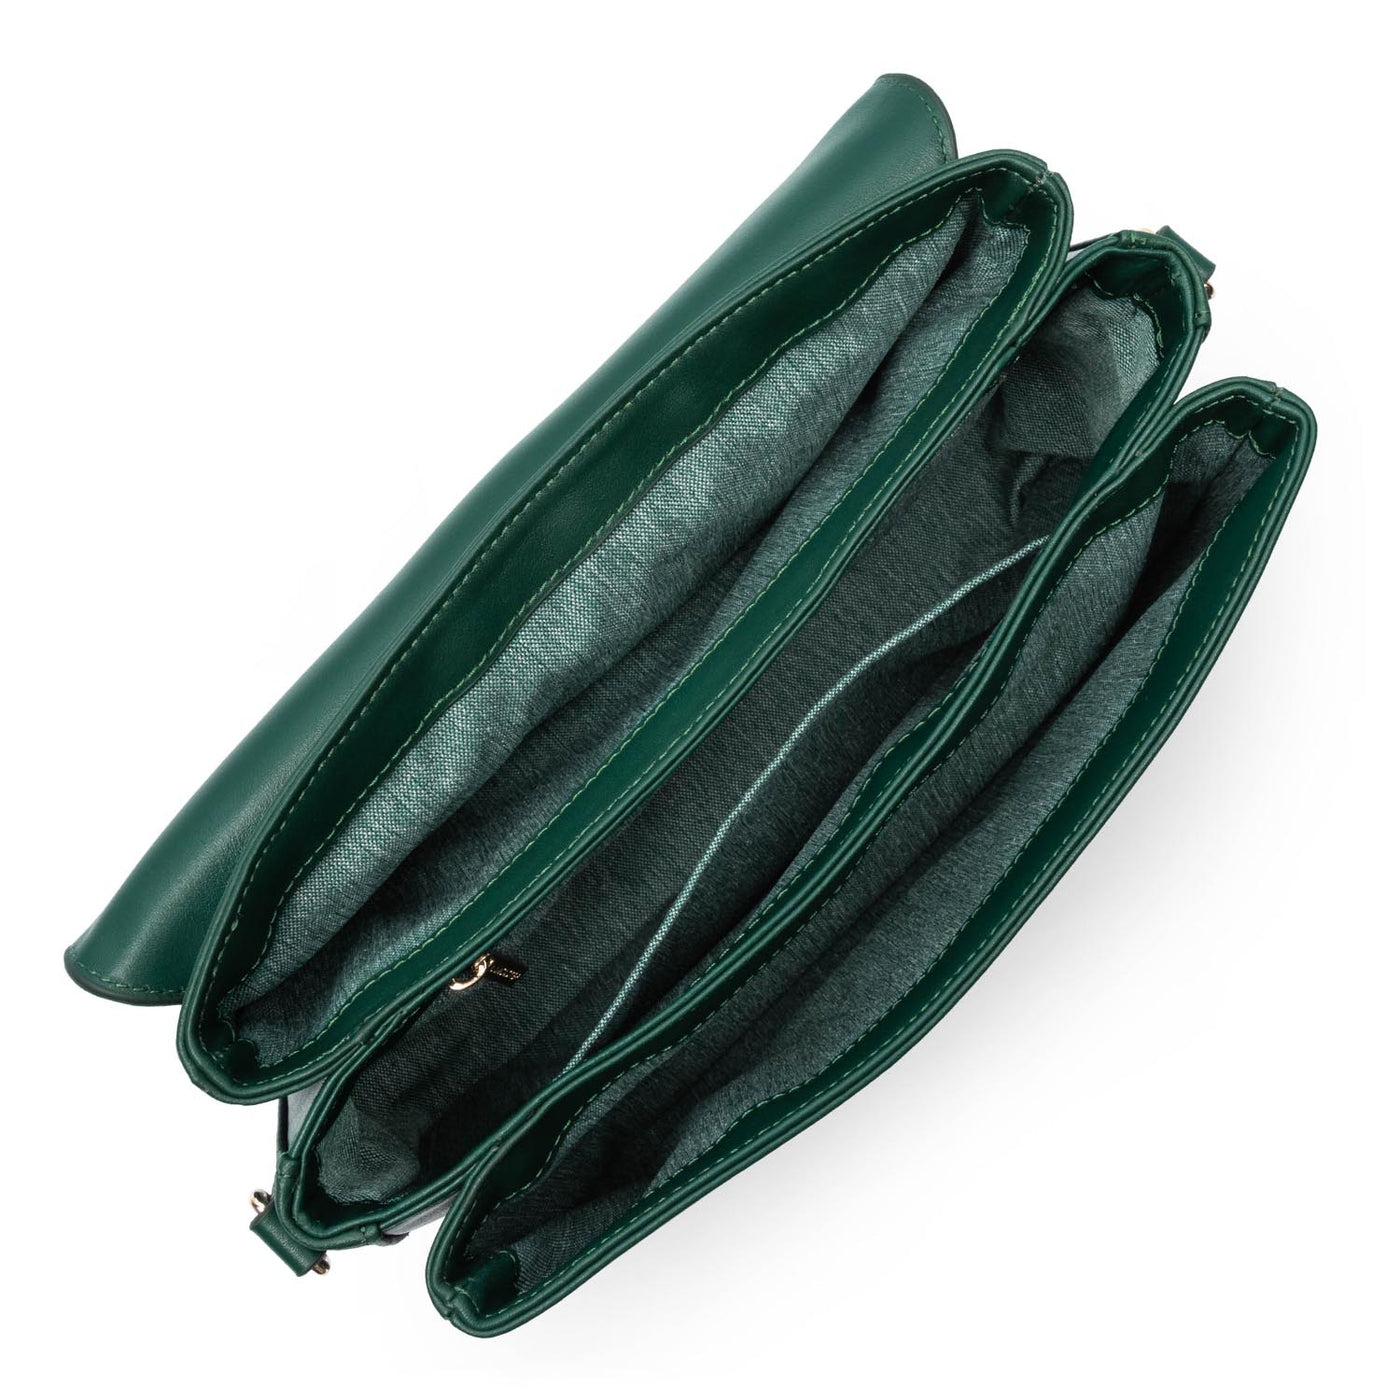 large crossbody bag - donna fia #couleur_vert-fonc